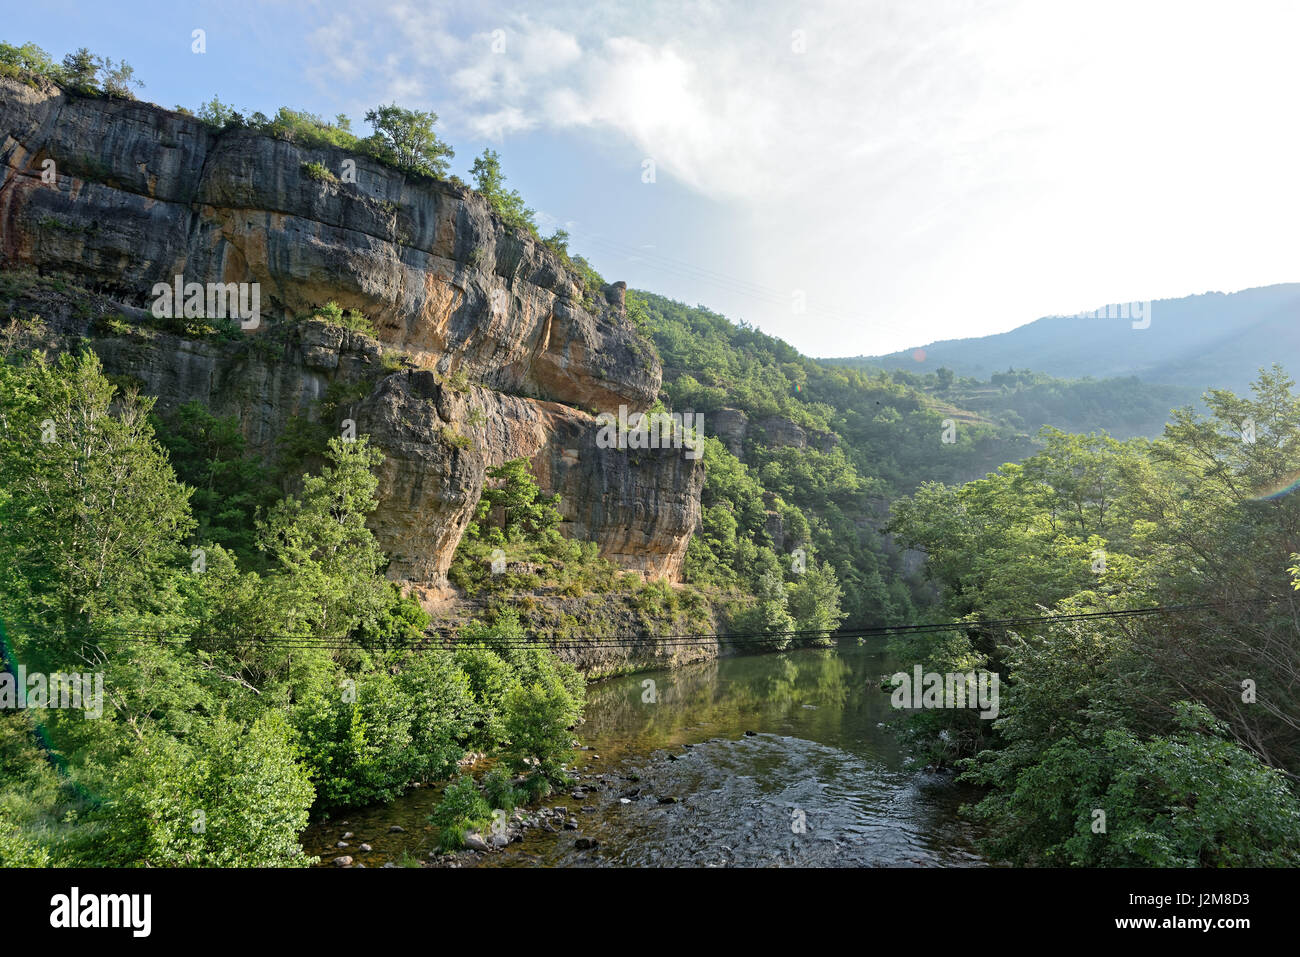 La France, l'Aveyron, Parc Naturel Régional des Grands Causses (Parc Naturel Régional des Grands Causses), la vallée de la Dourbie Banque D'Images